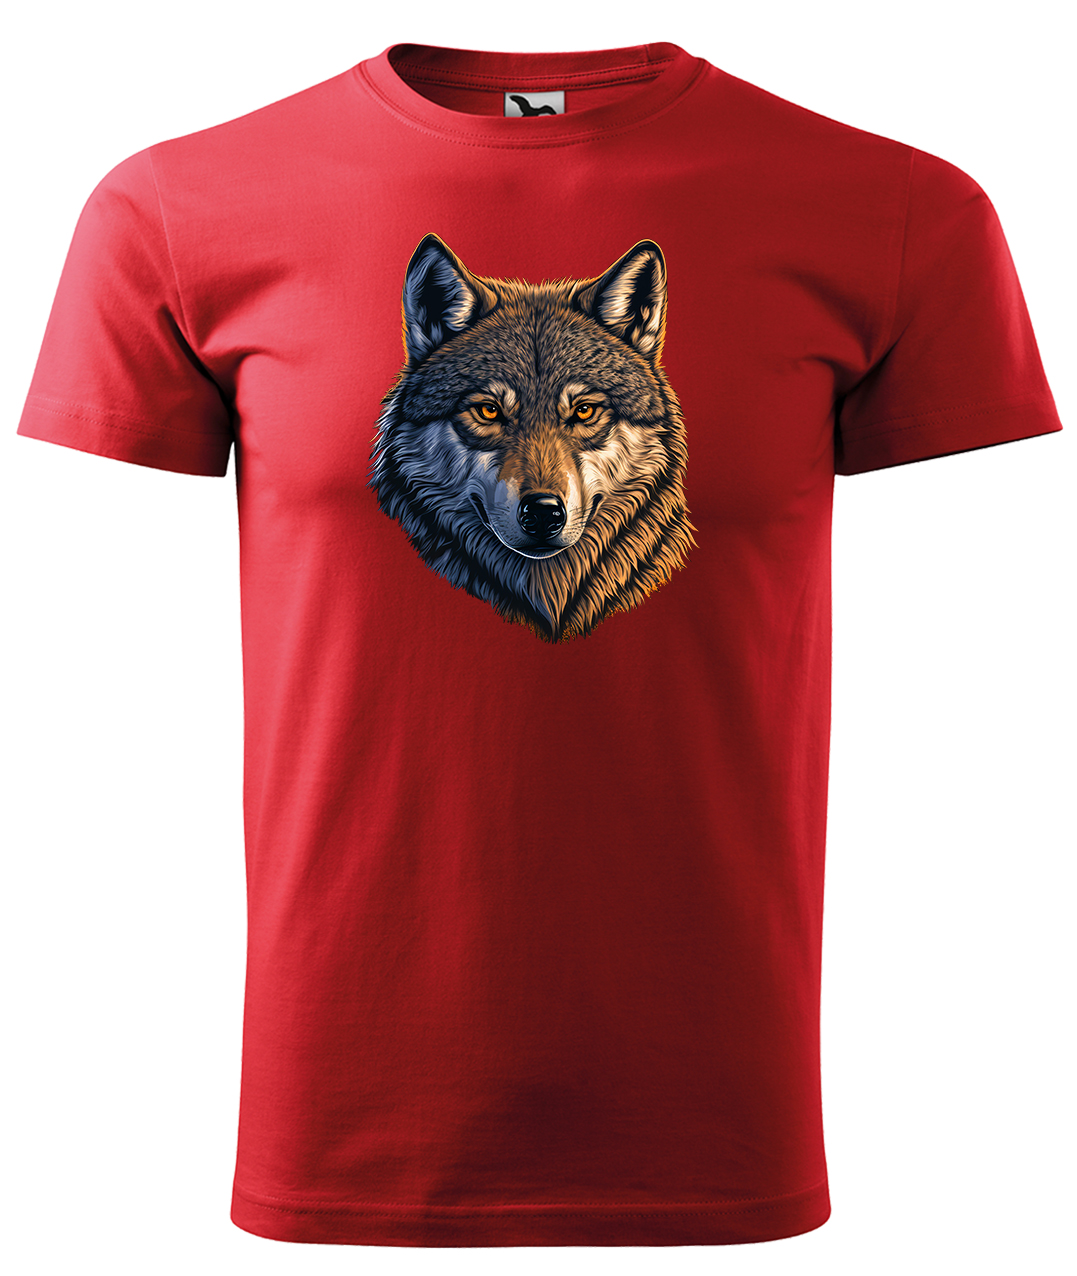 Dětské tričko s vlkem - Hlava vlka Velikost: 8 let / 134 cm, Barva: Červená (07), Délka rukávu: Krátký rukáv